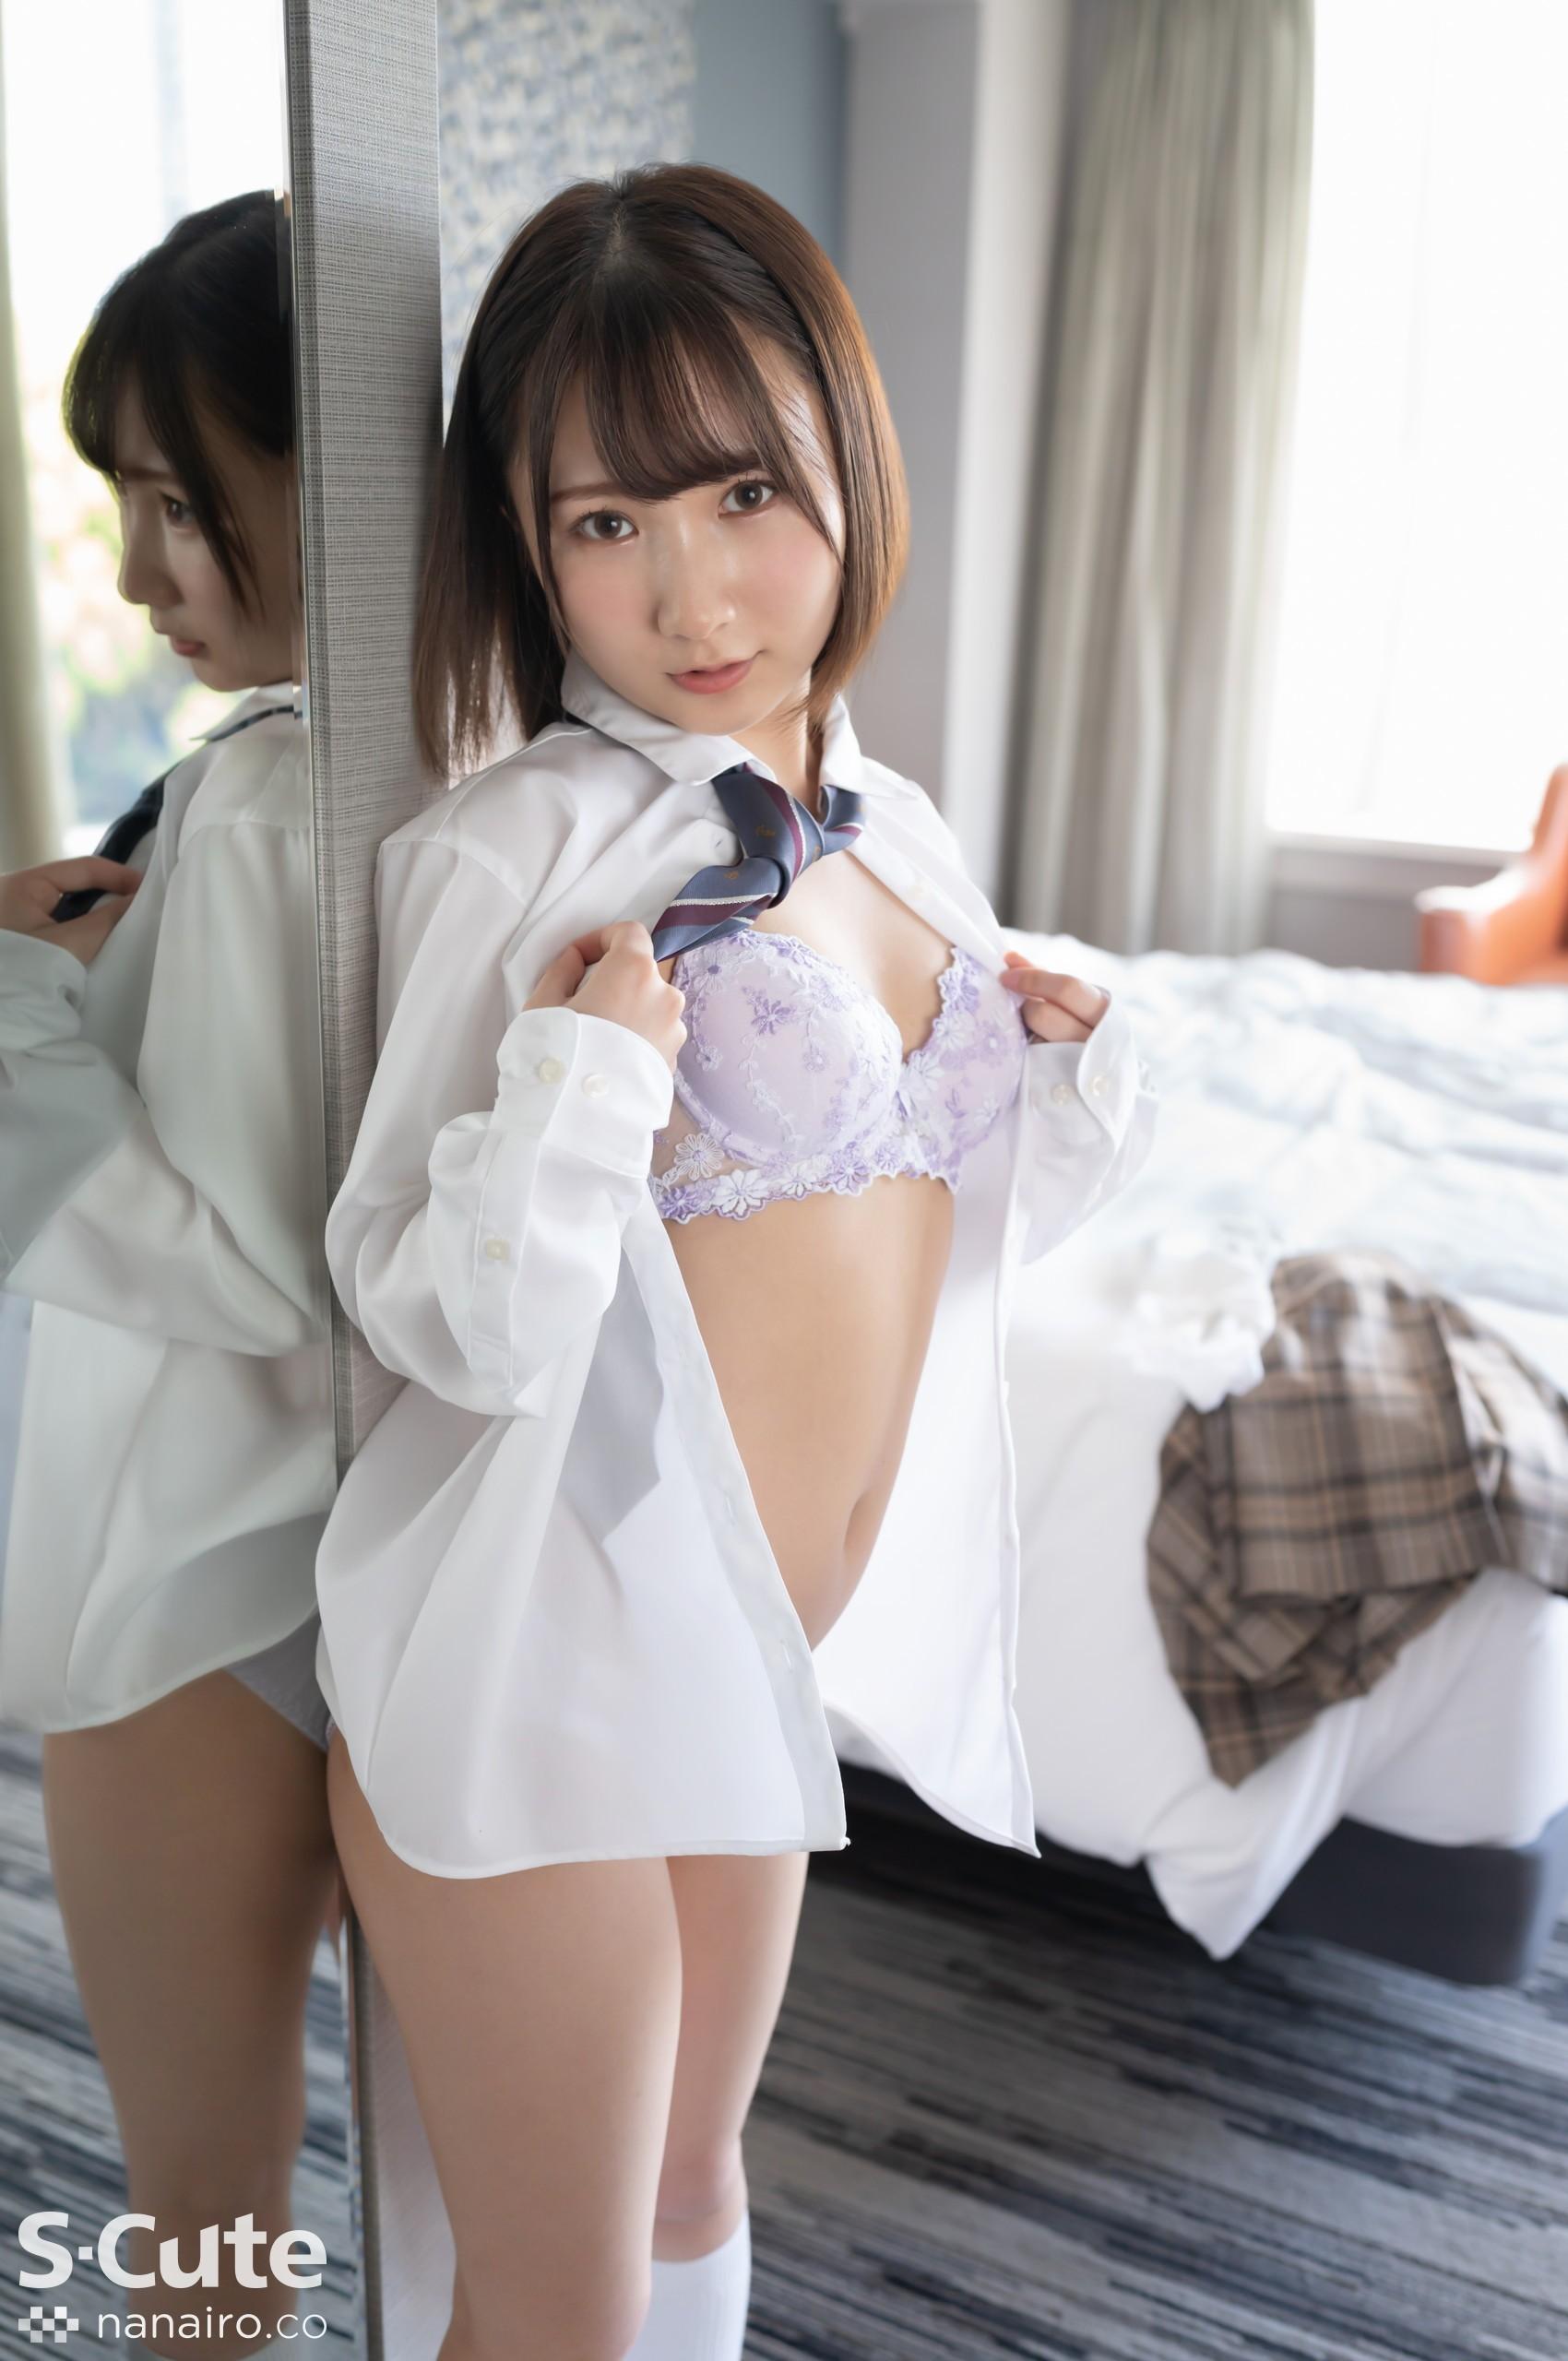 S-Cute 922_kana_02 Adult SEX / Kana para uma linda garota uniforme que só pode ser vista na ativa